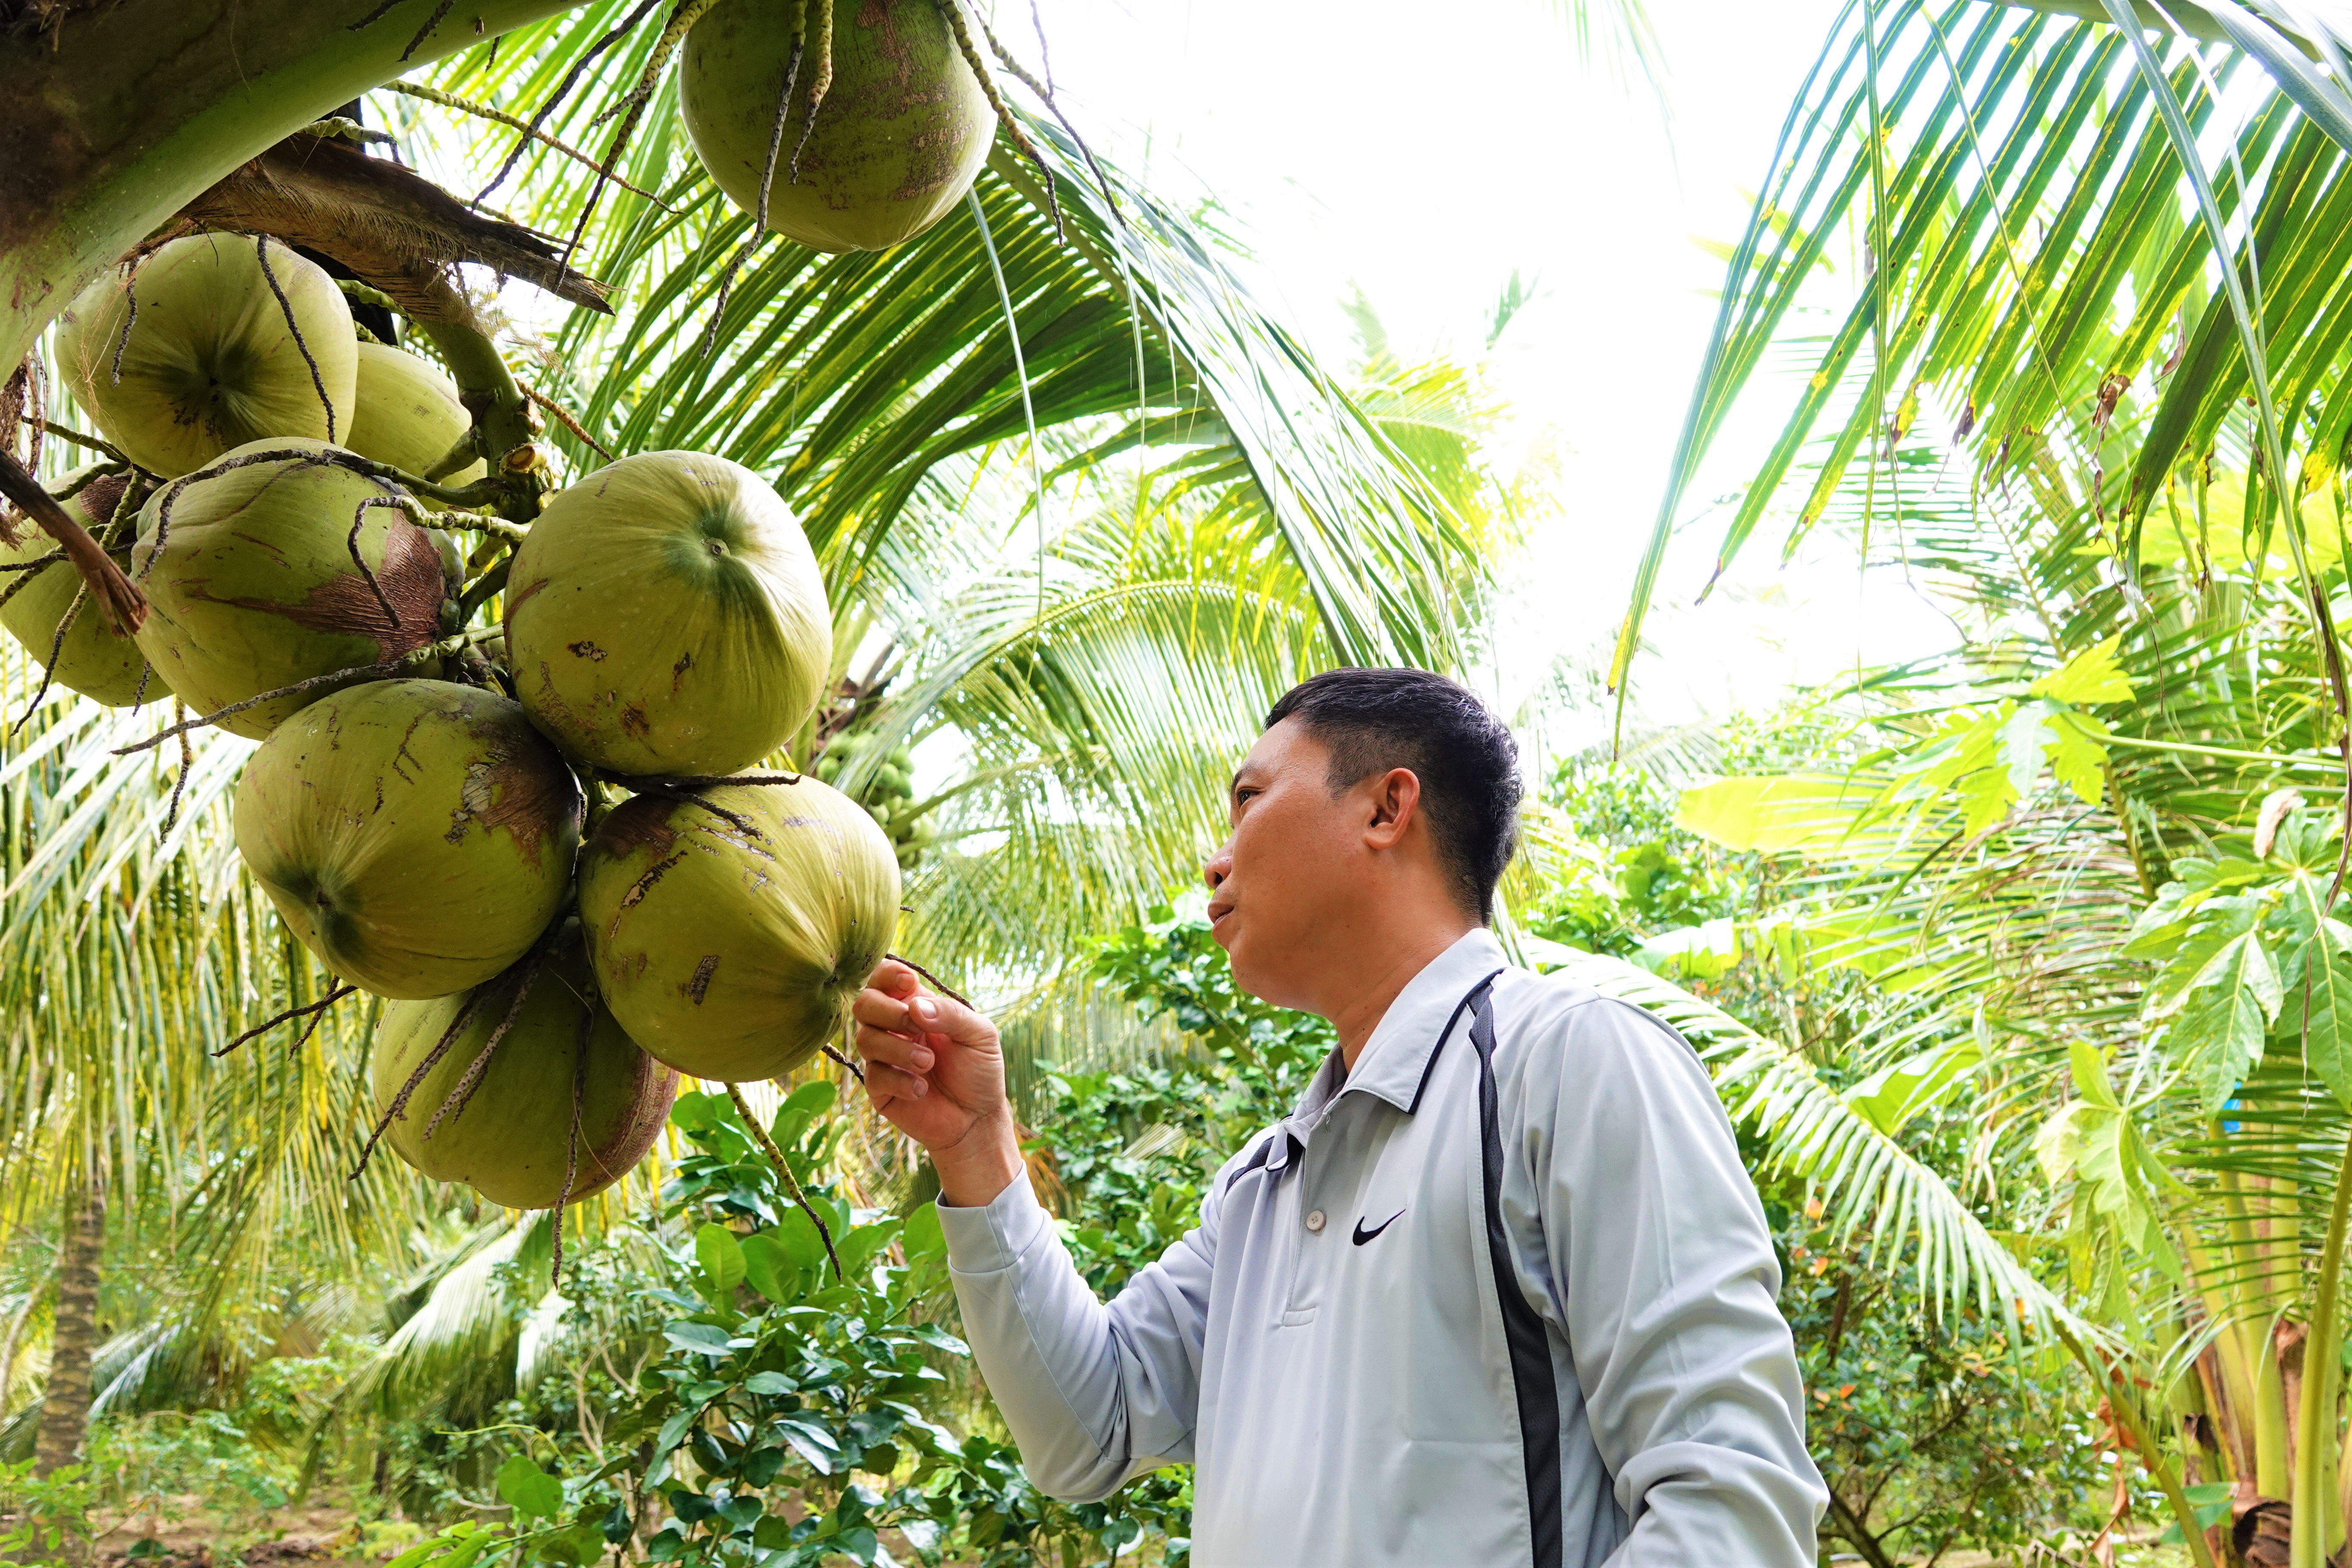 Trồng dừa sáp: Trồng cây dừa sáp không chỉ mang lại lợi ích cho gia đình bạn mà nó còn góp phần tạo nên vẻ đẹp của tự nhiên. Hãy khám phá sự đa dạng của những cây dừa sáp và cách trồng chúng để mang lại sự hoàn hảo cho vườn nhà bạn.